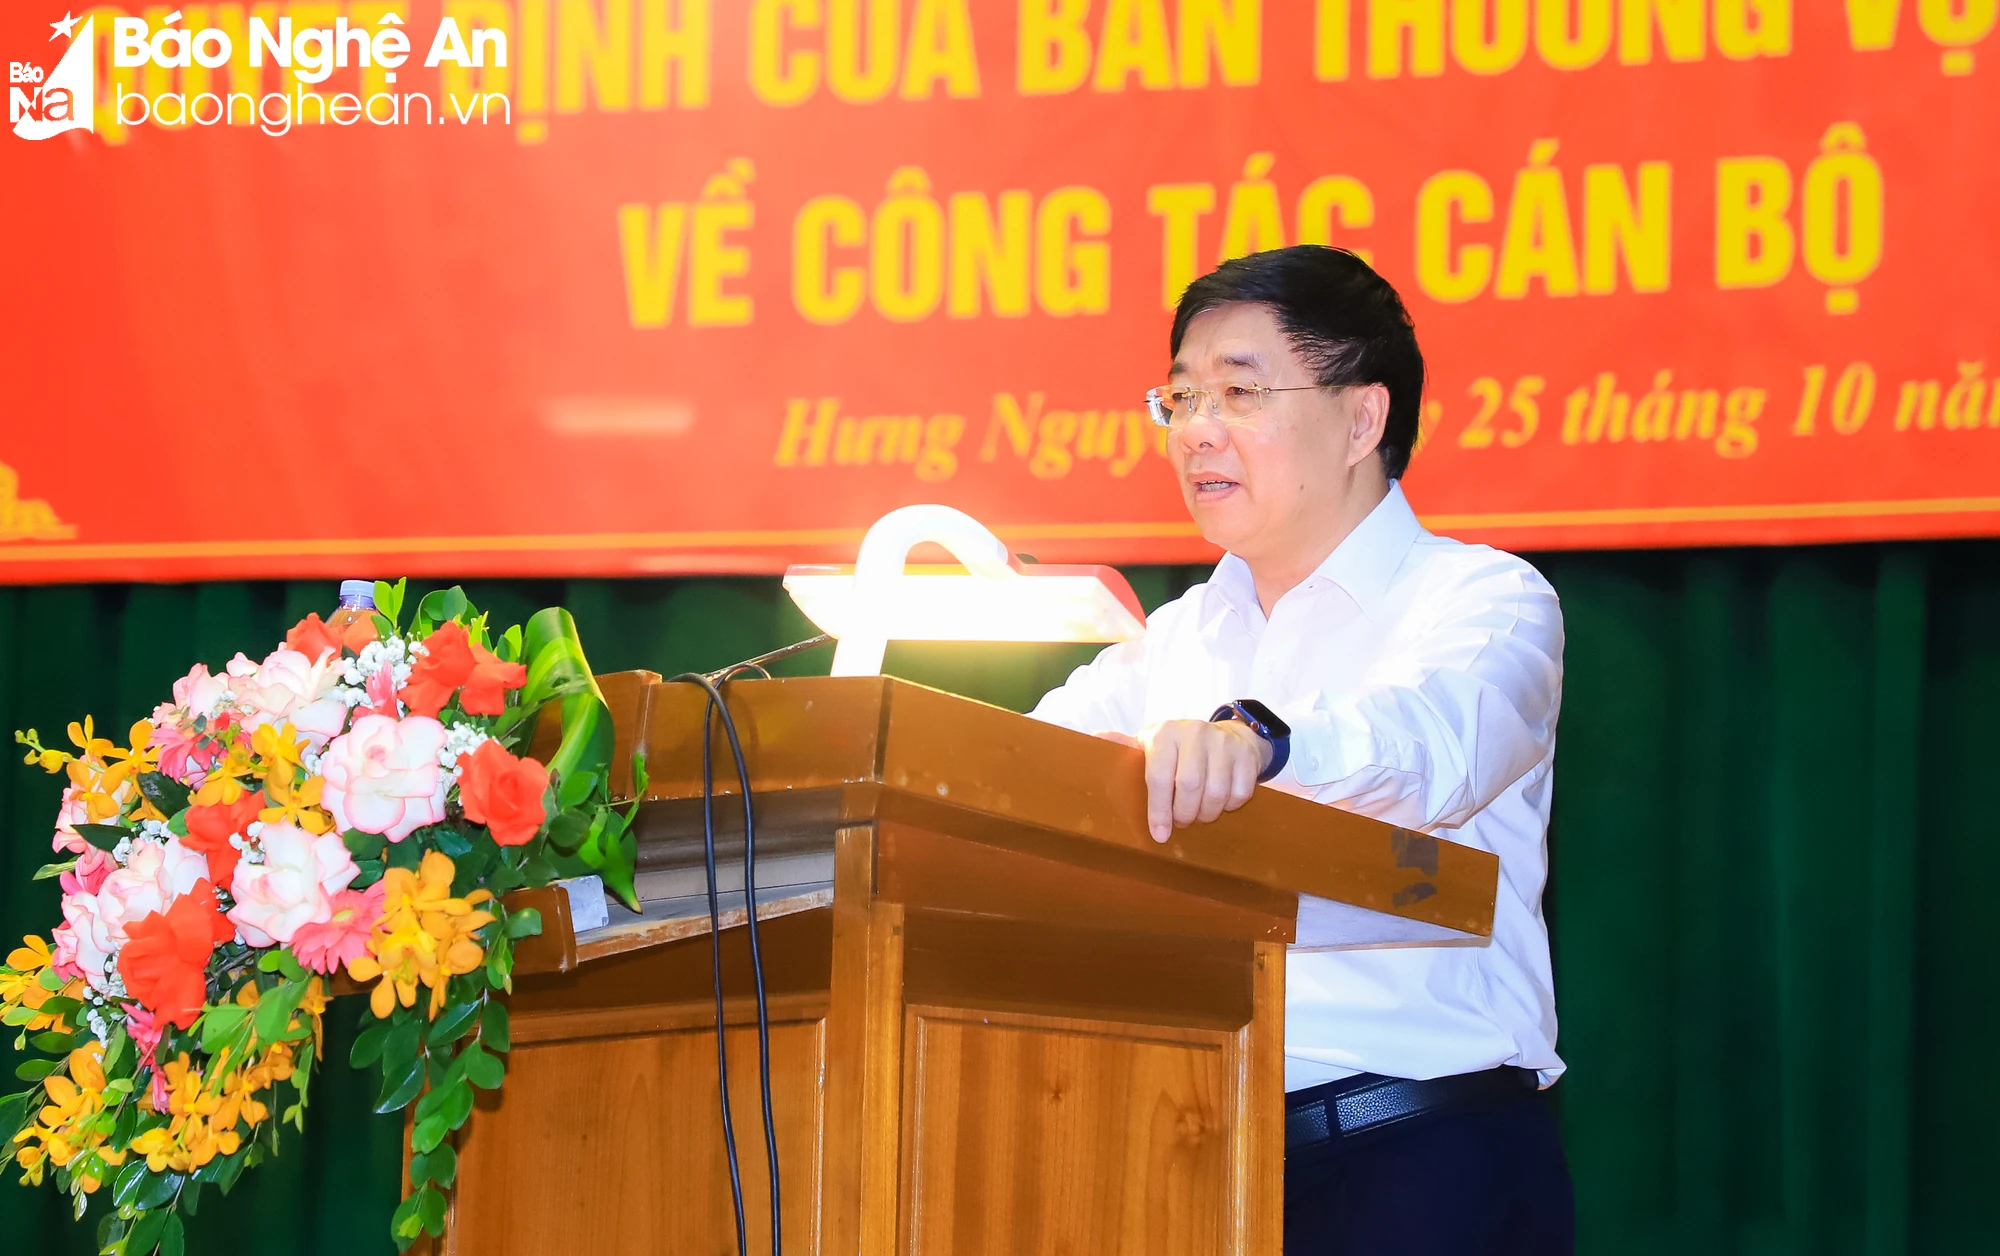  Điều động, chỉ định Giám đốc Sở Xây dựng Nghệ An giữ chức Bí thư Huyện ủy Hưng Nguyên - Ảnh 2.